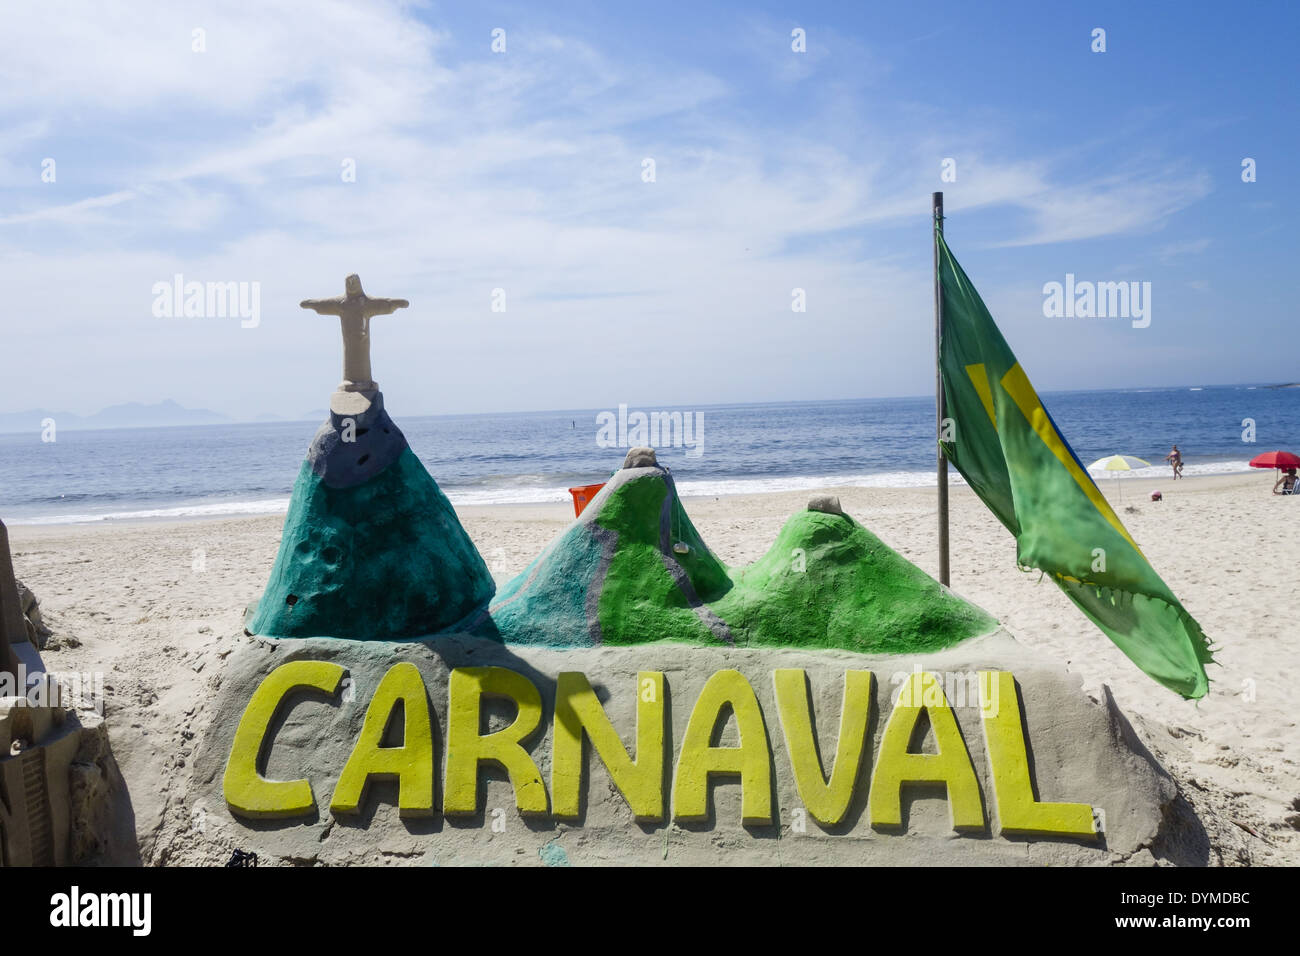 Rio de Janeiro, Copacabana, Carnaval, Brazil Stock Photo